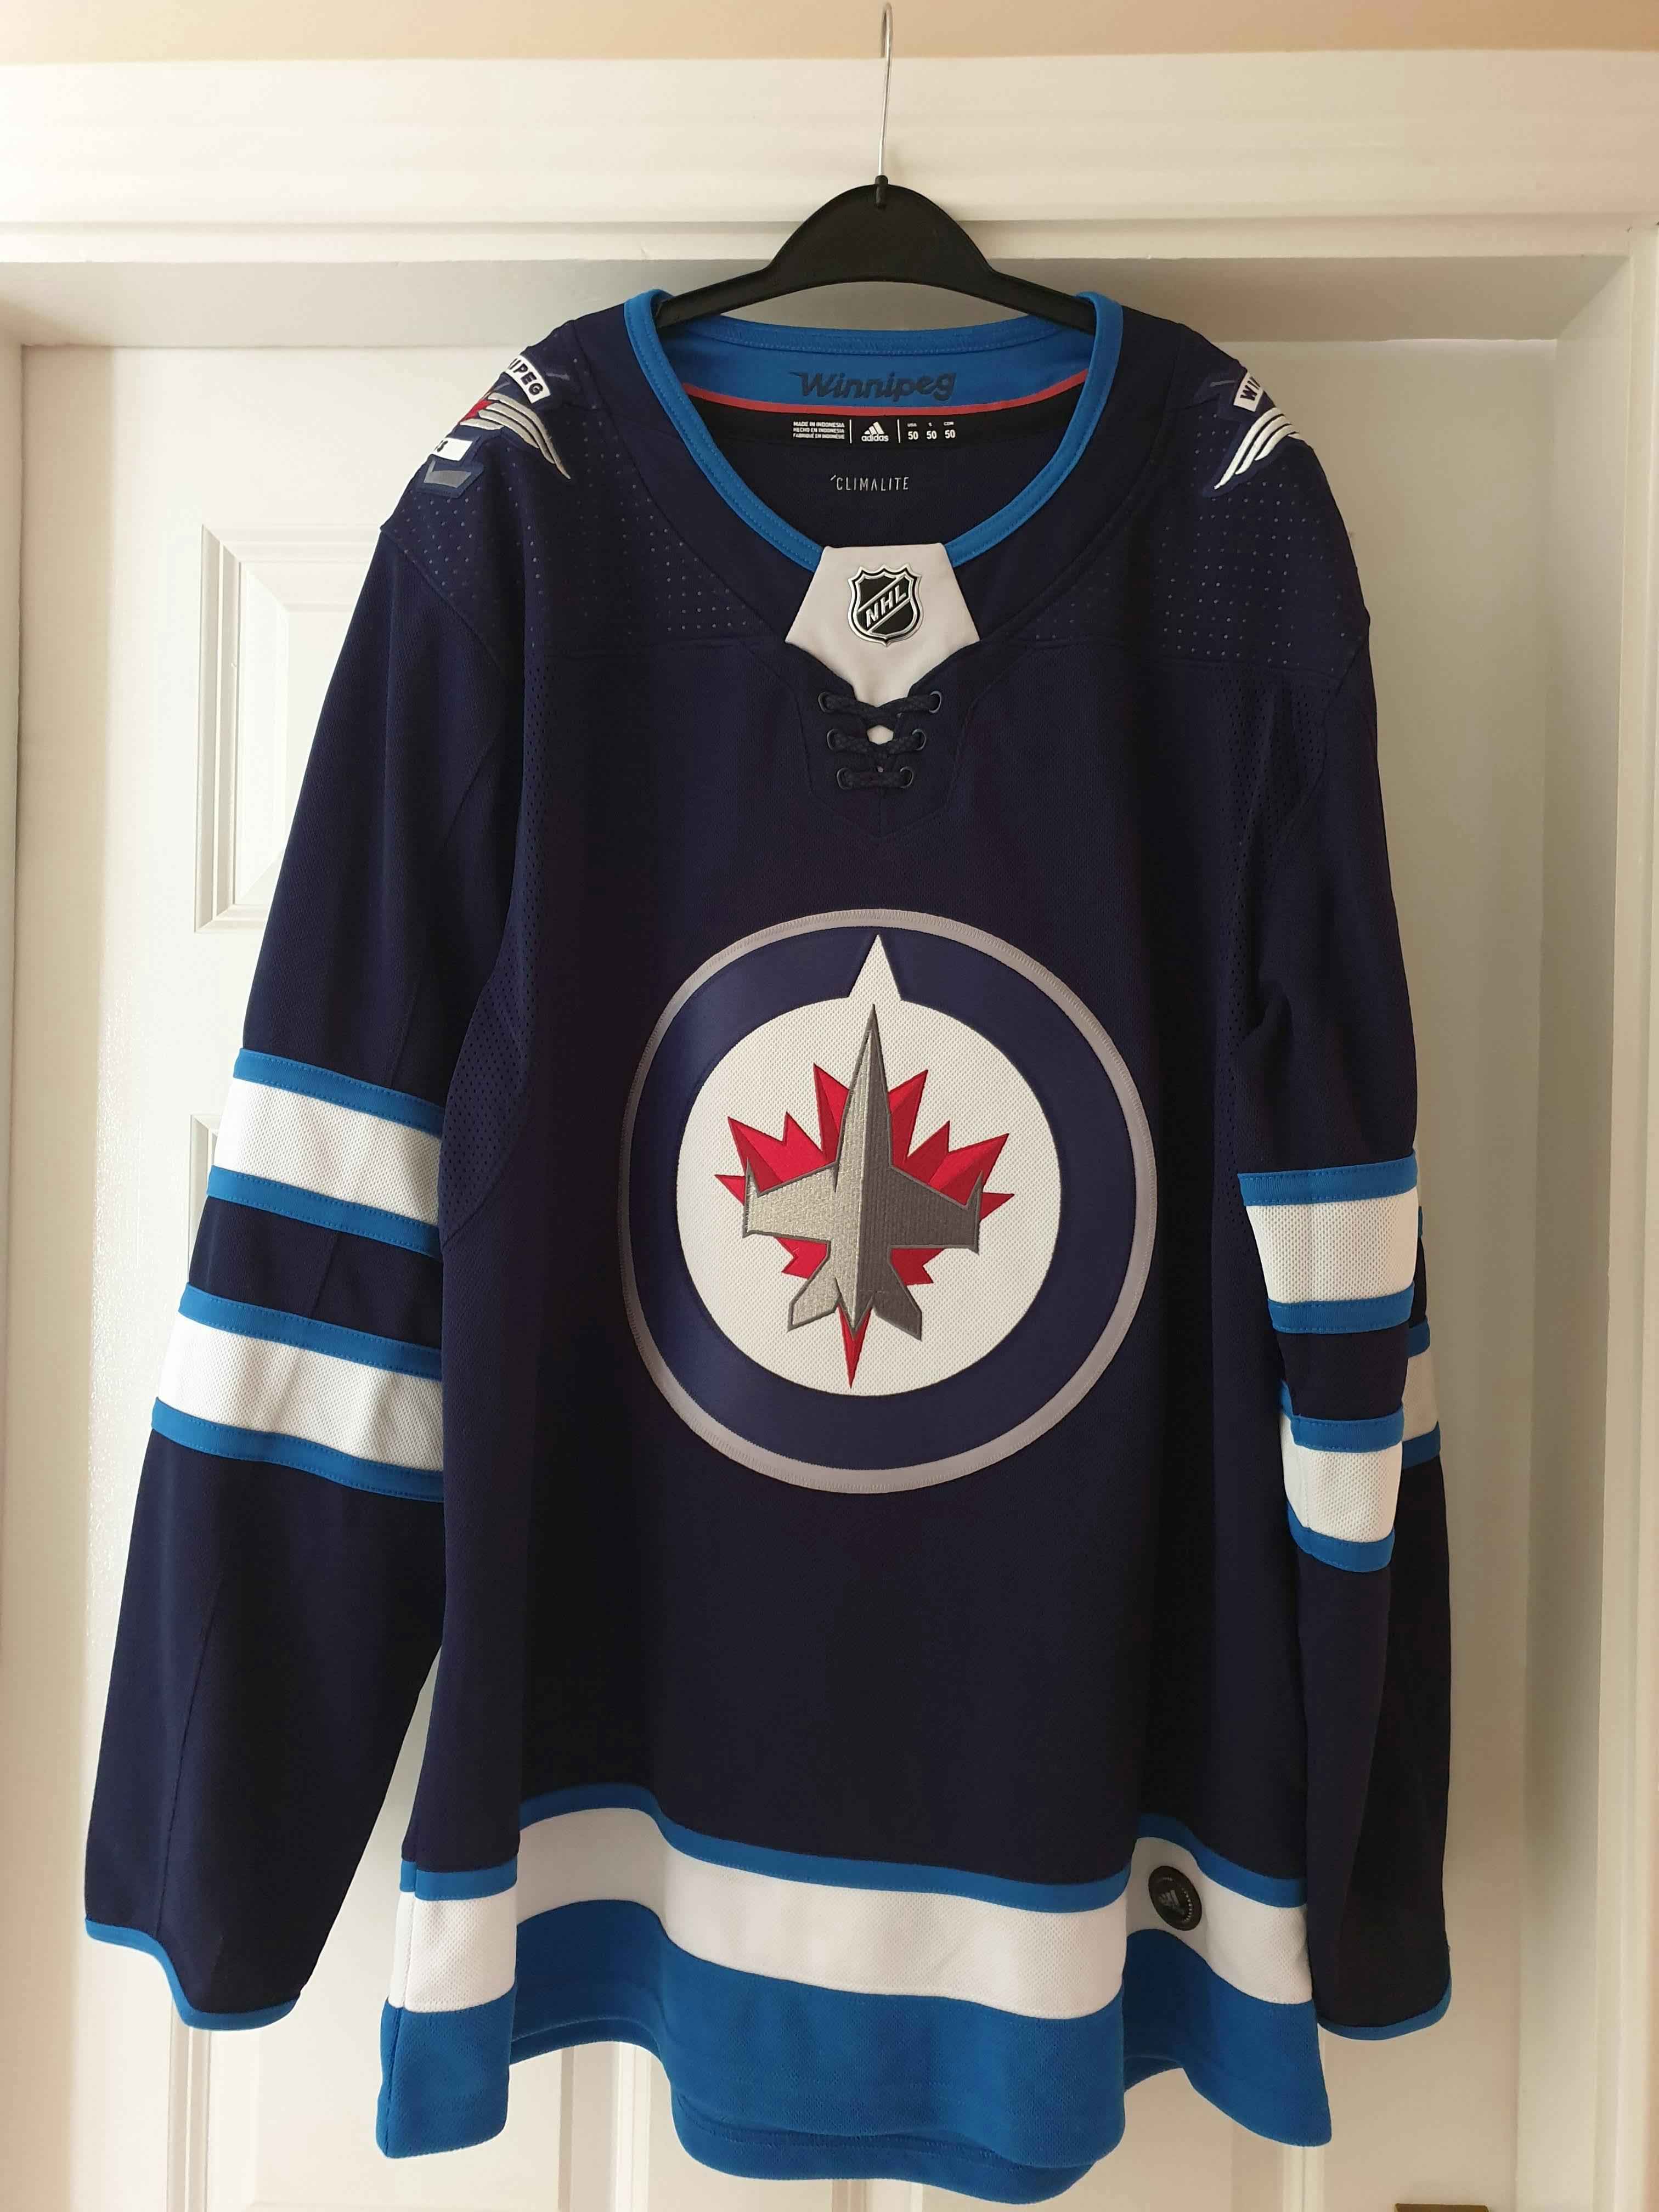 Teemu Selanne Winnipeg Jets Vintage Jersey - Size 52